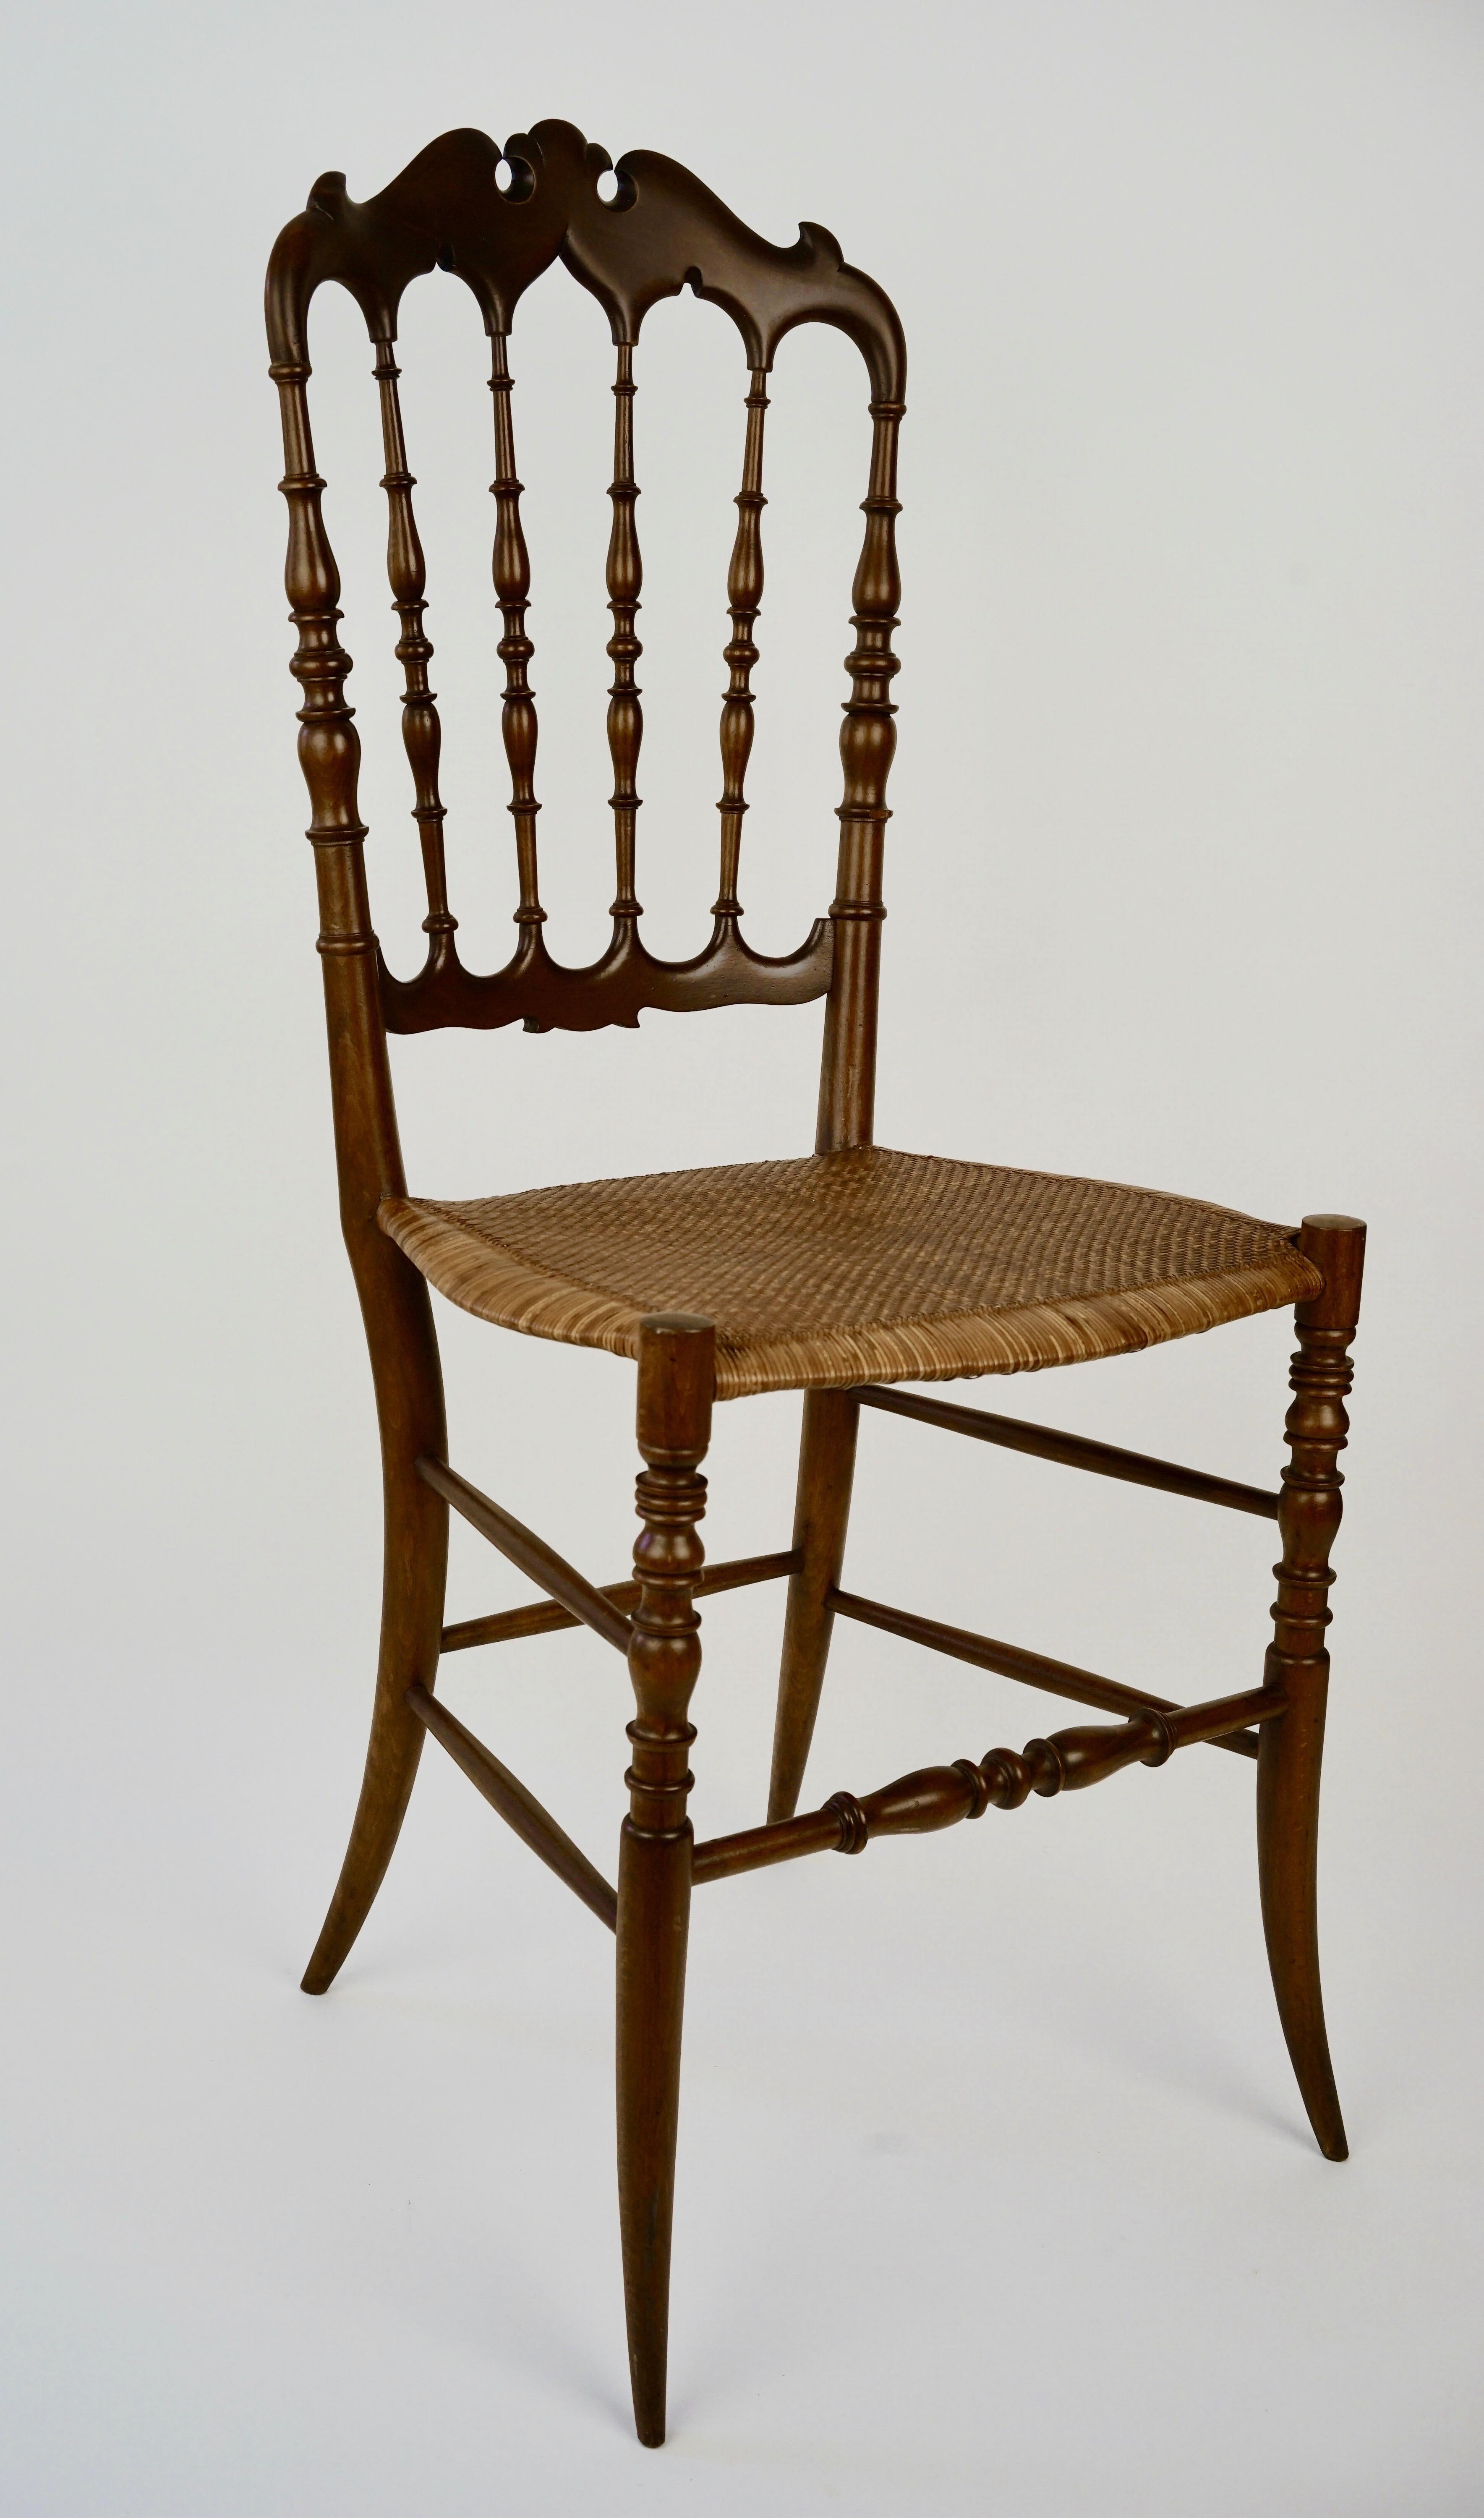 Die dekorative Version des Chiavari-Stuhls, der Parisienne aus den 1950er Jahren, ist ein moderner Klassiker.
Es ist nicht nur schön anzusehen, sondern auch ein Wunder der Technik und Raffinesse.
Er verbindet Leichtigkeit mit Robustheit in einer